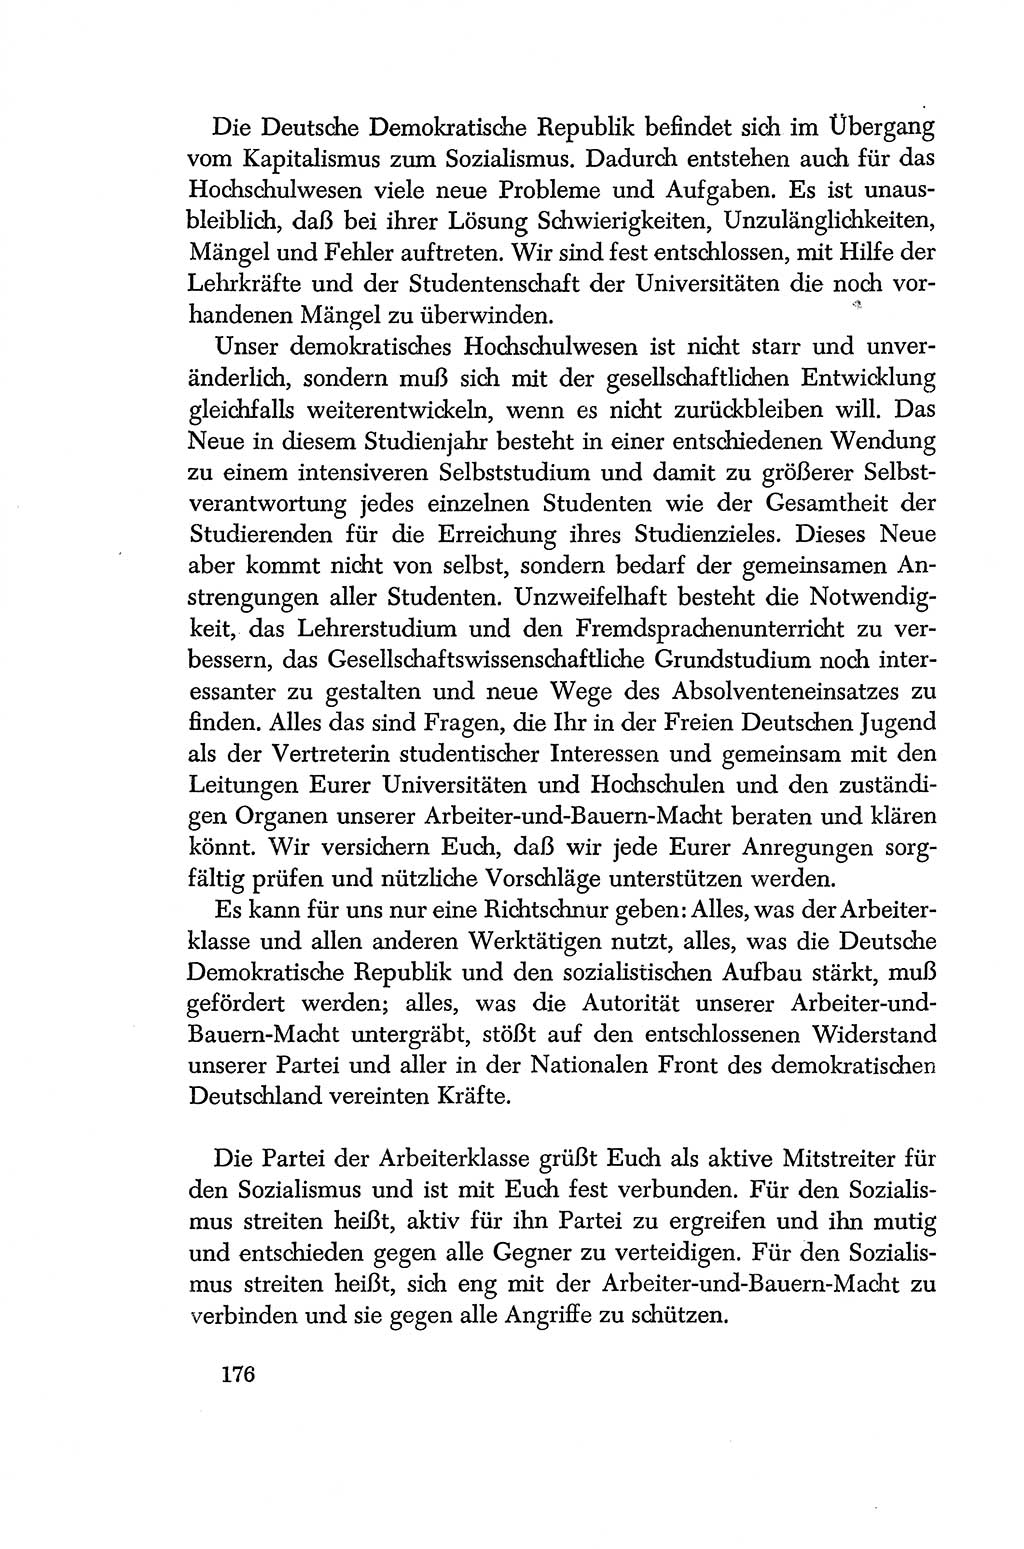 Dokumente der Sozialistischen Einheitspartei Deutschlands (SED) [Deutsche Demokratische Republik (DDR)] 1956-1957, Seite 176 (Dok. SED DDR 1956-1957, S. 176)